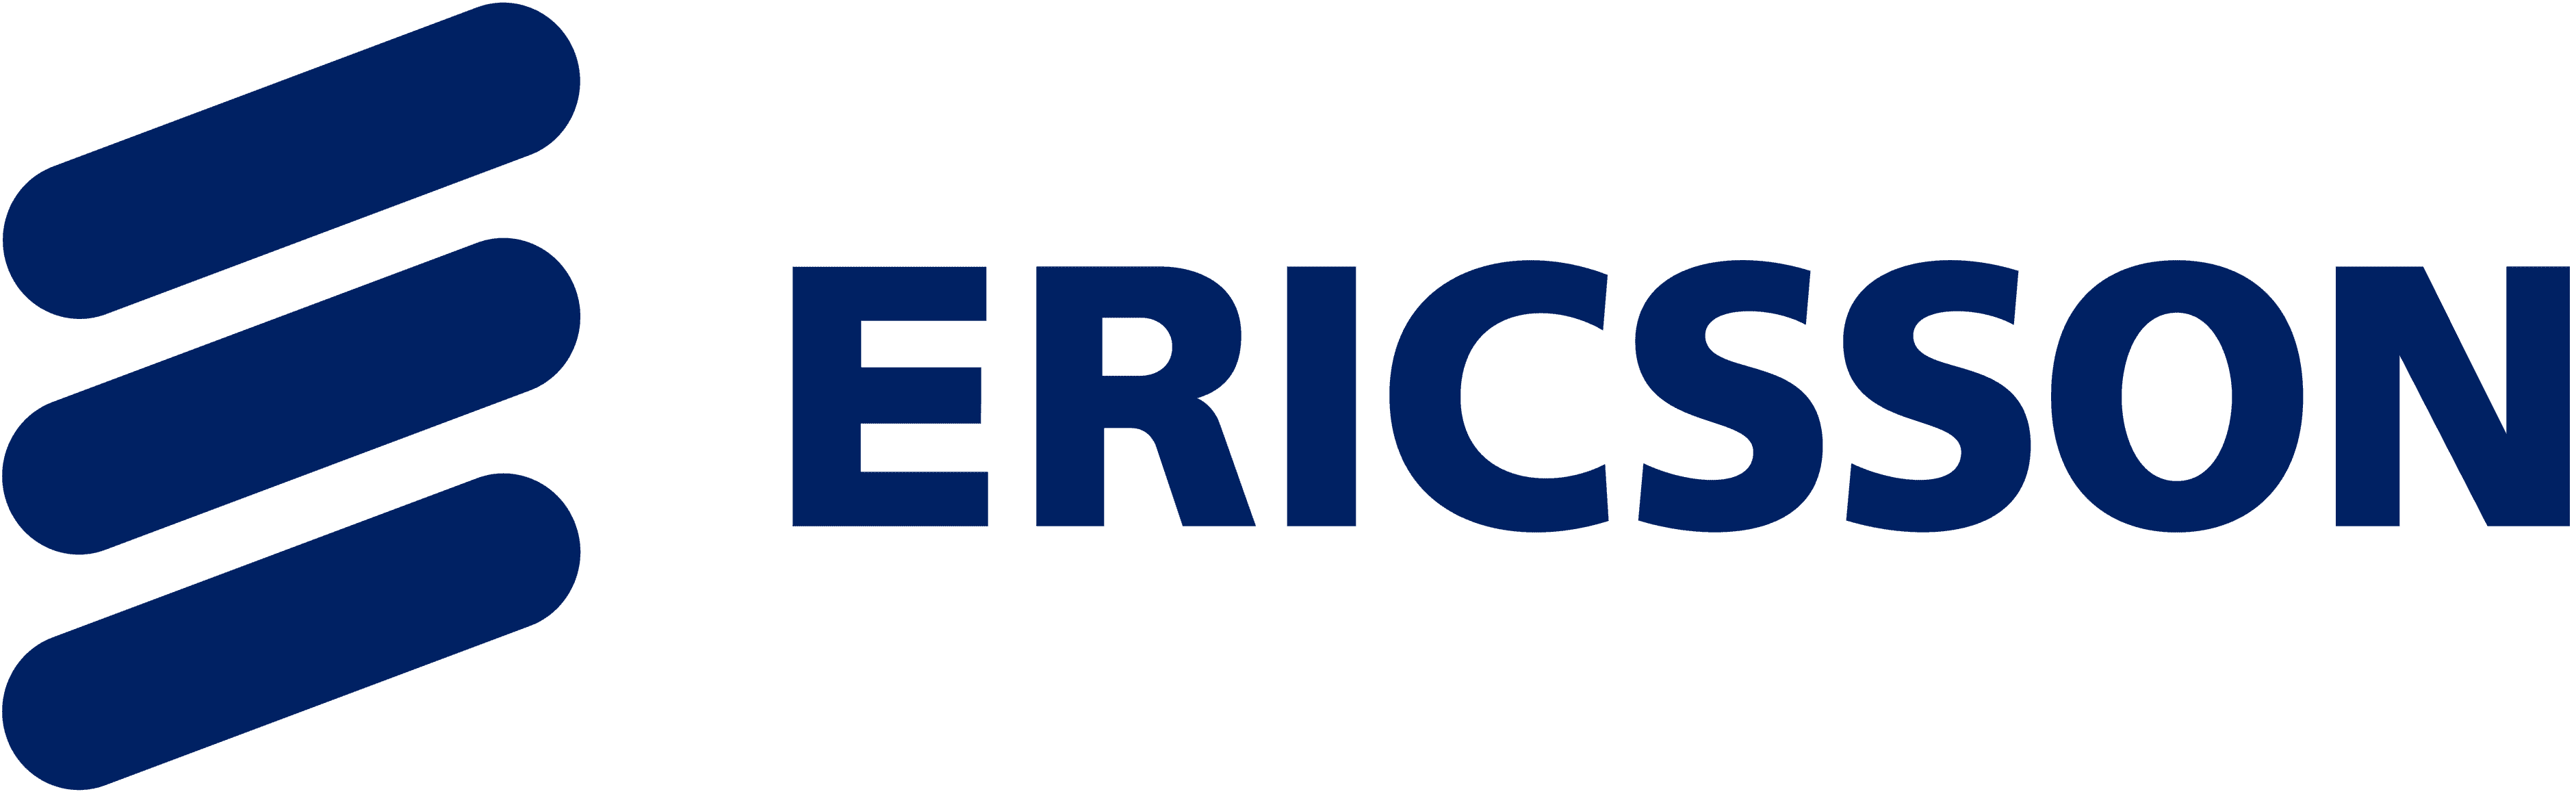 Ericsson vendor logo